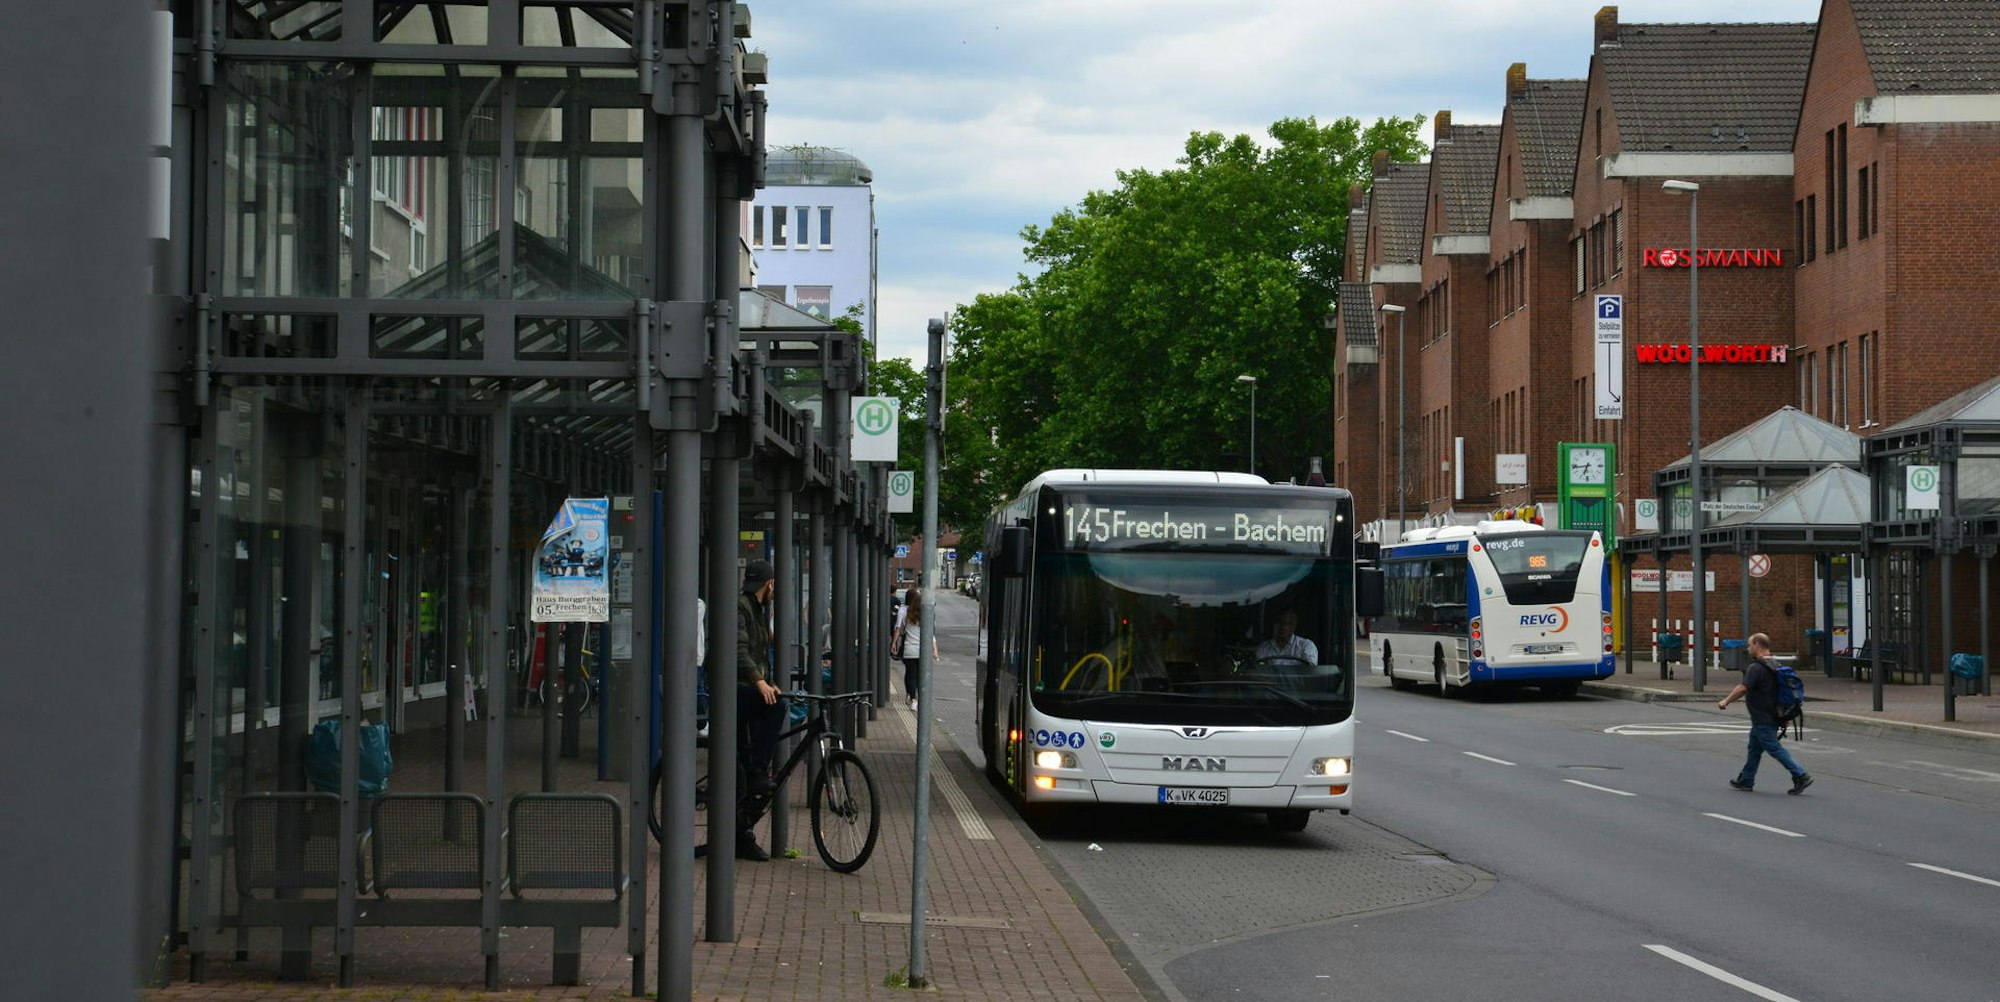 Die Busse der Linie 145 fahren samstags künftig öfter. Über die Endhaltestelle wird noch debattiert.